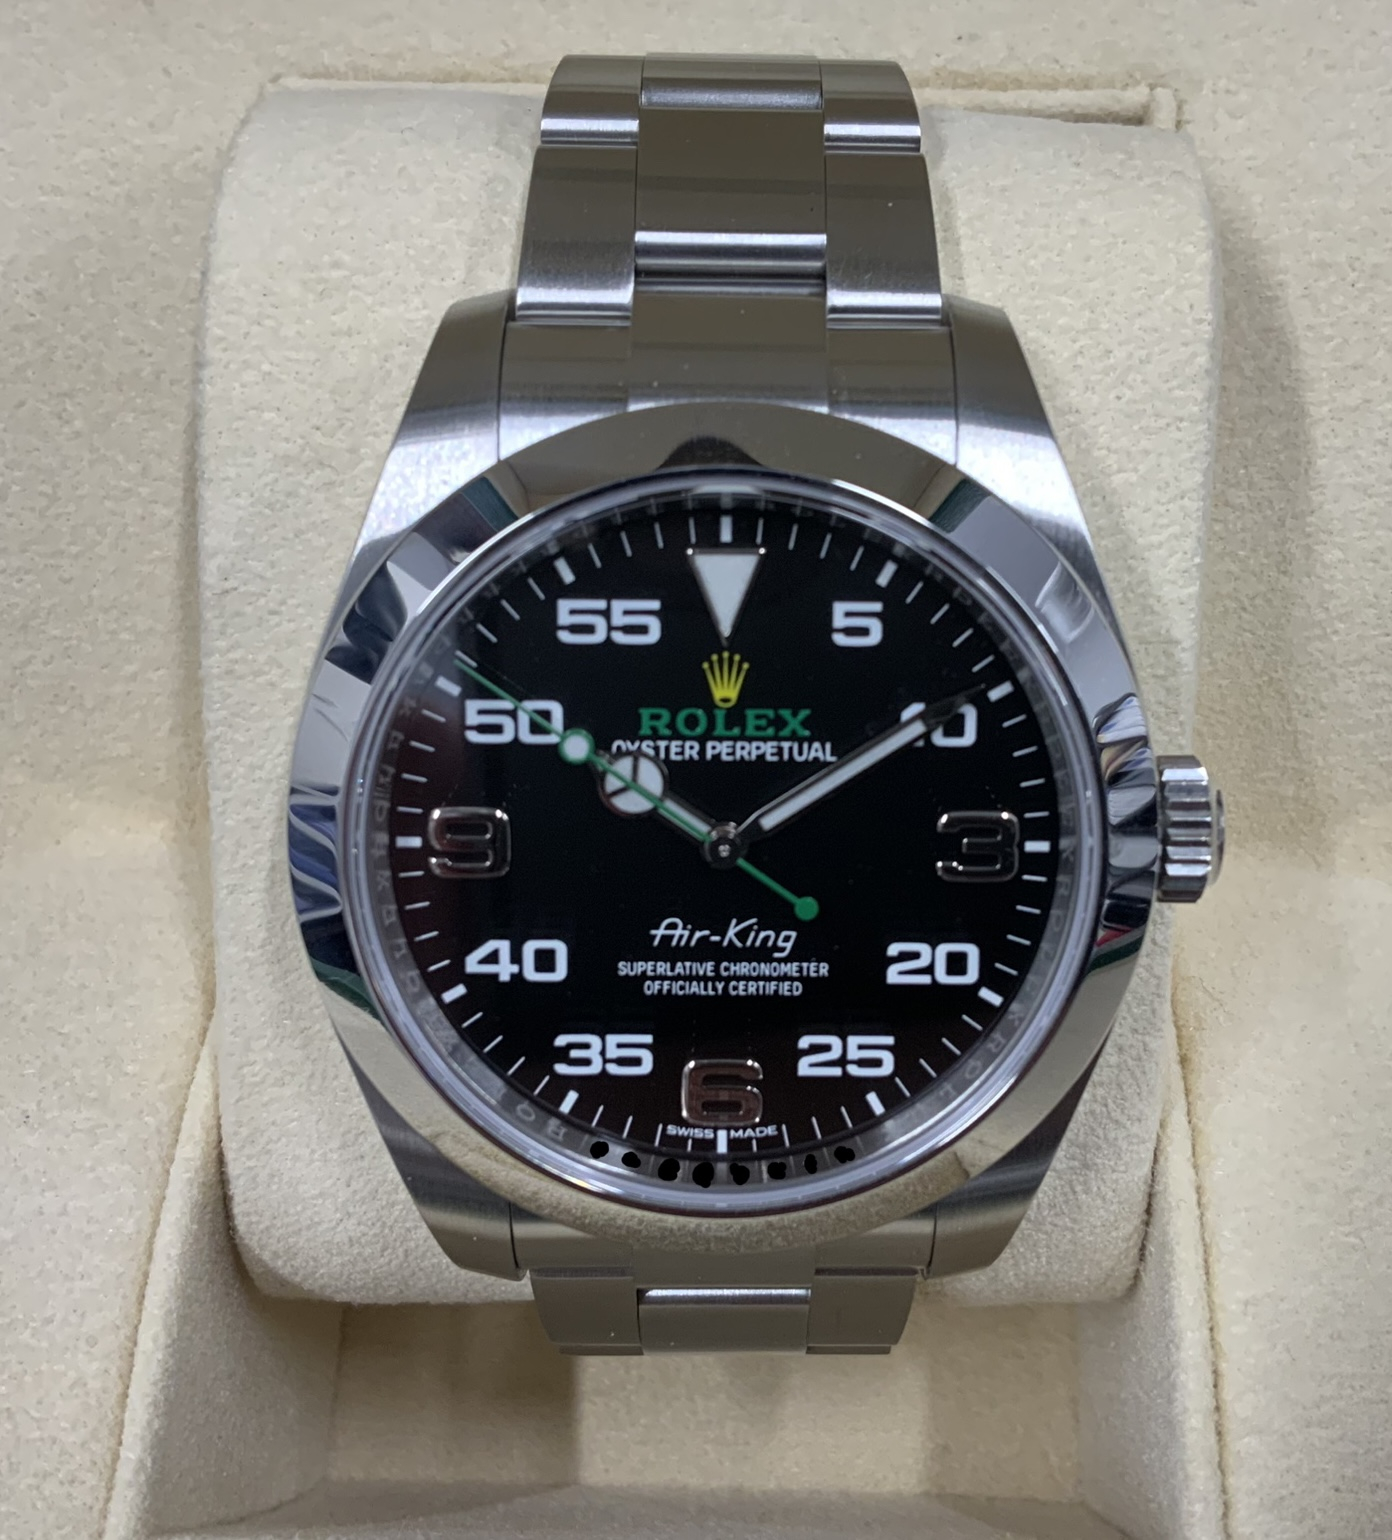 ロレックス エアキング ランダムシリアル ルーレット 116900 ROLEX 腕時計 黒文字盤